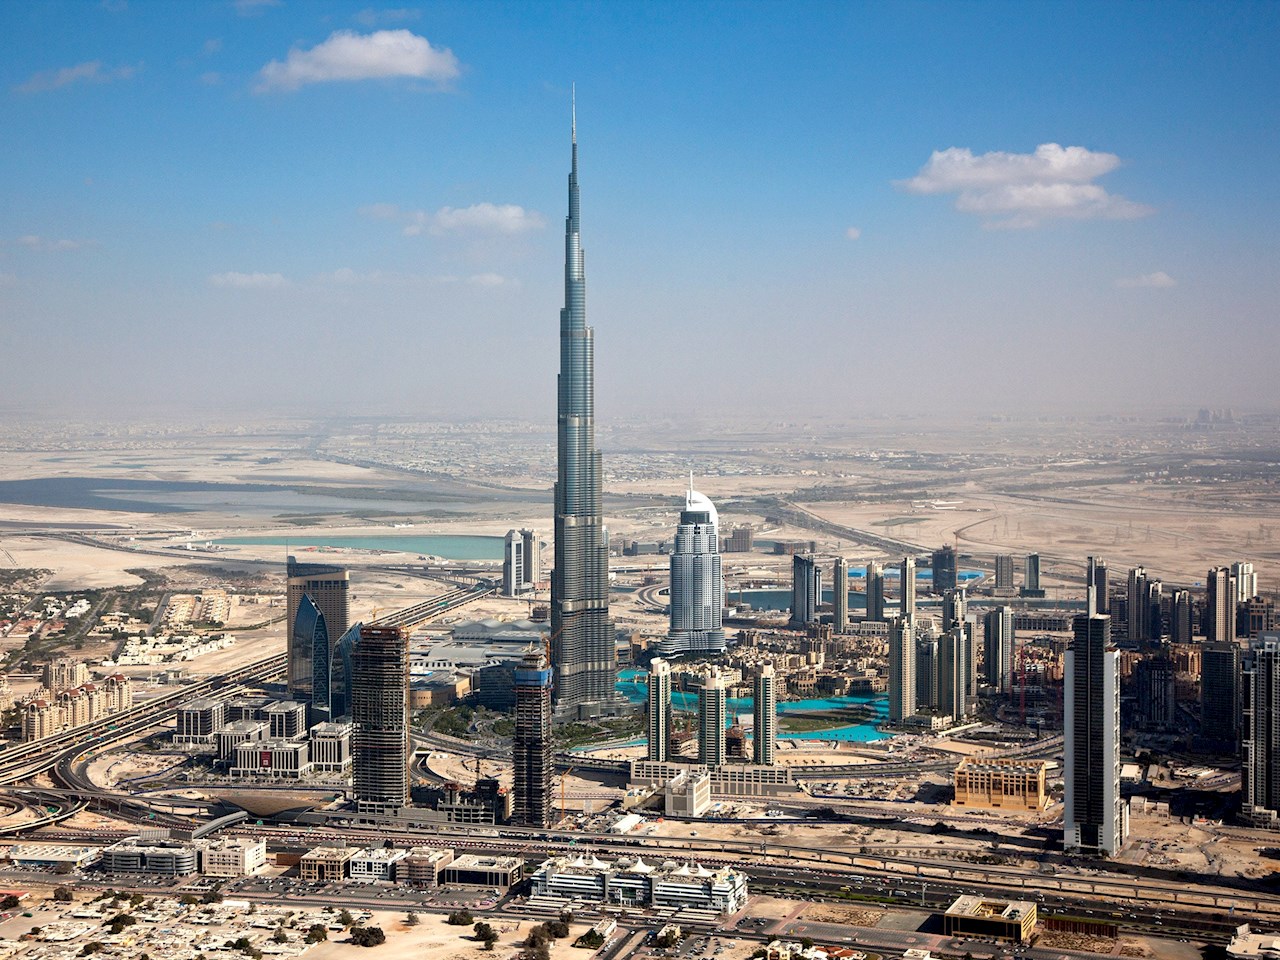 Câți metri are Burj Khalifa, cea mai înaltă clădire din lume?